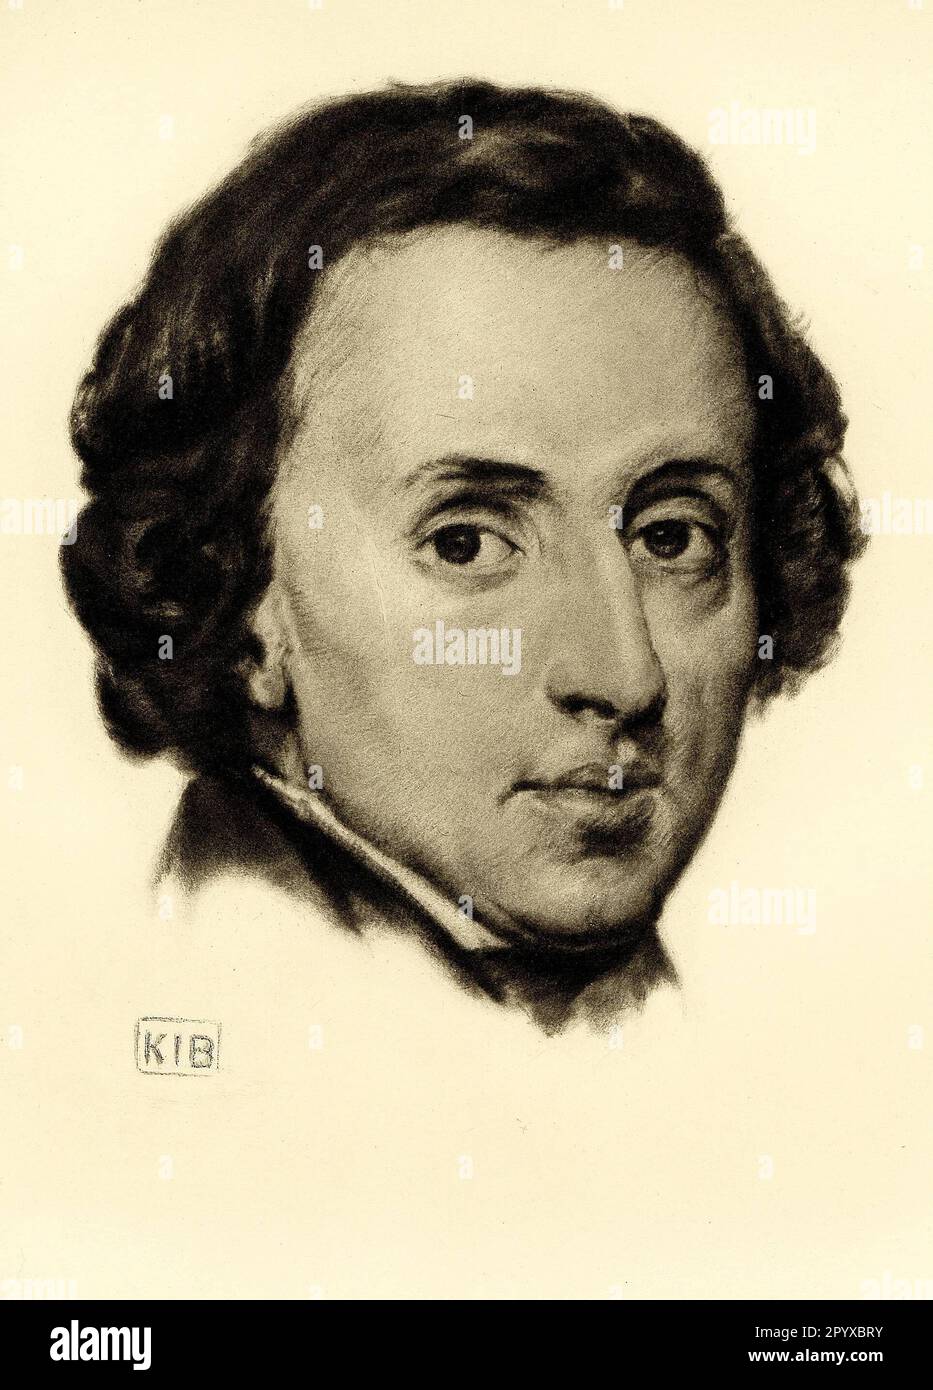 Frédéric François Chopin (1810-1849), pianiste et compositeur polonais. Dessin de K. J. Boehringer. Photo: Heliogravure, Corpus Imaginum, Collection Hanfstaengl. Photo non datée. Banque D'Images